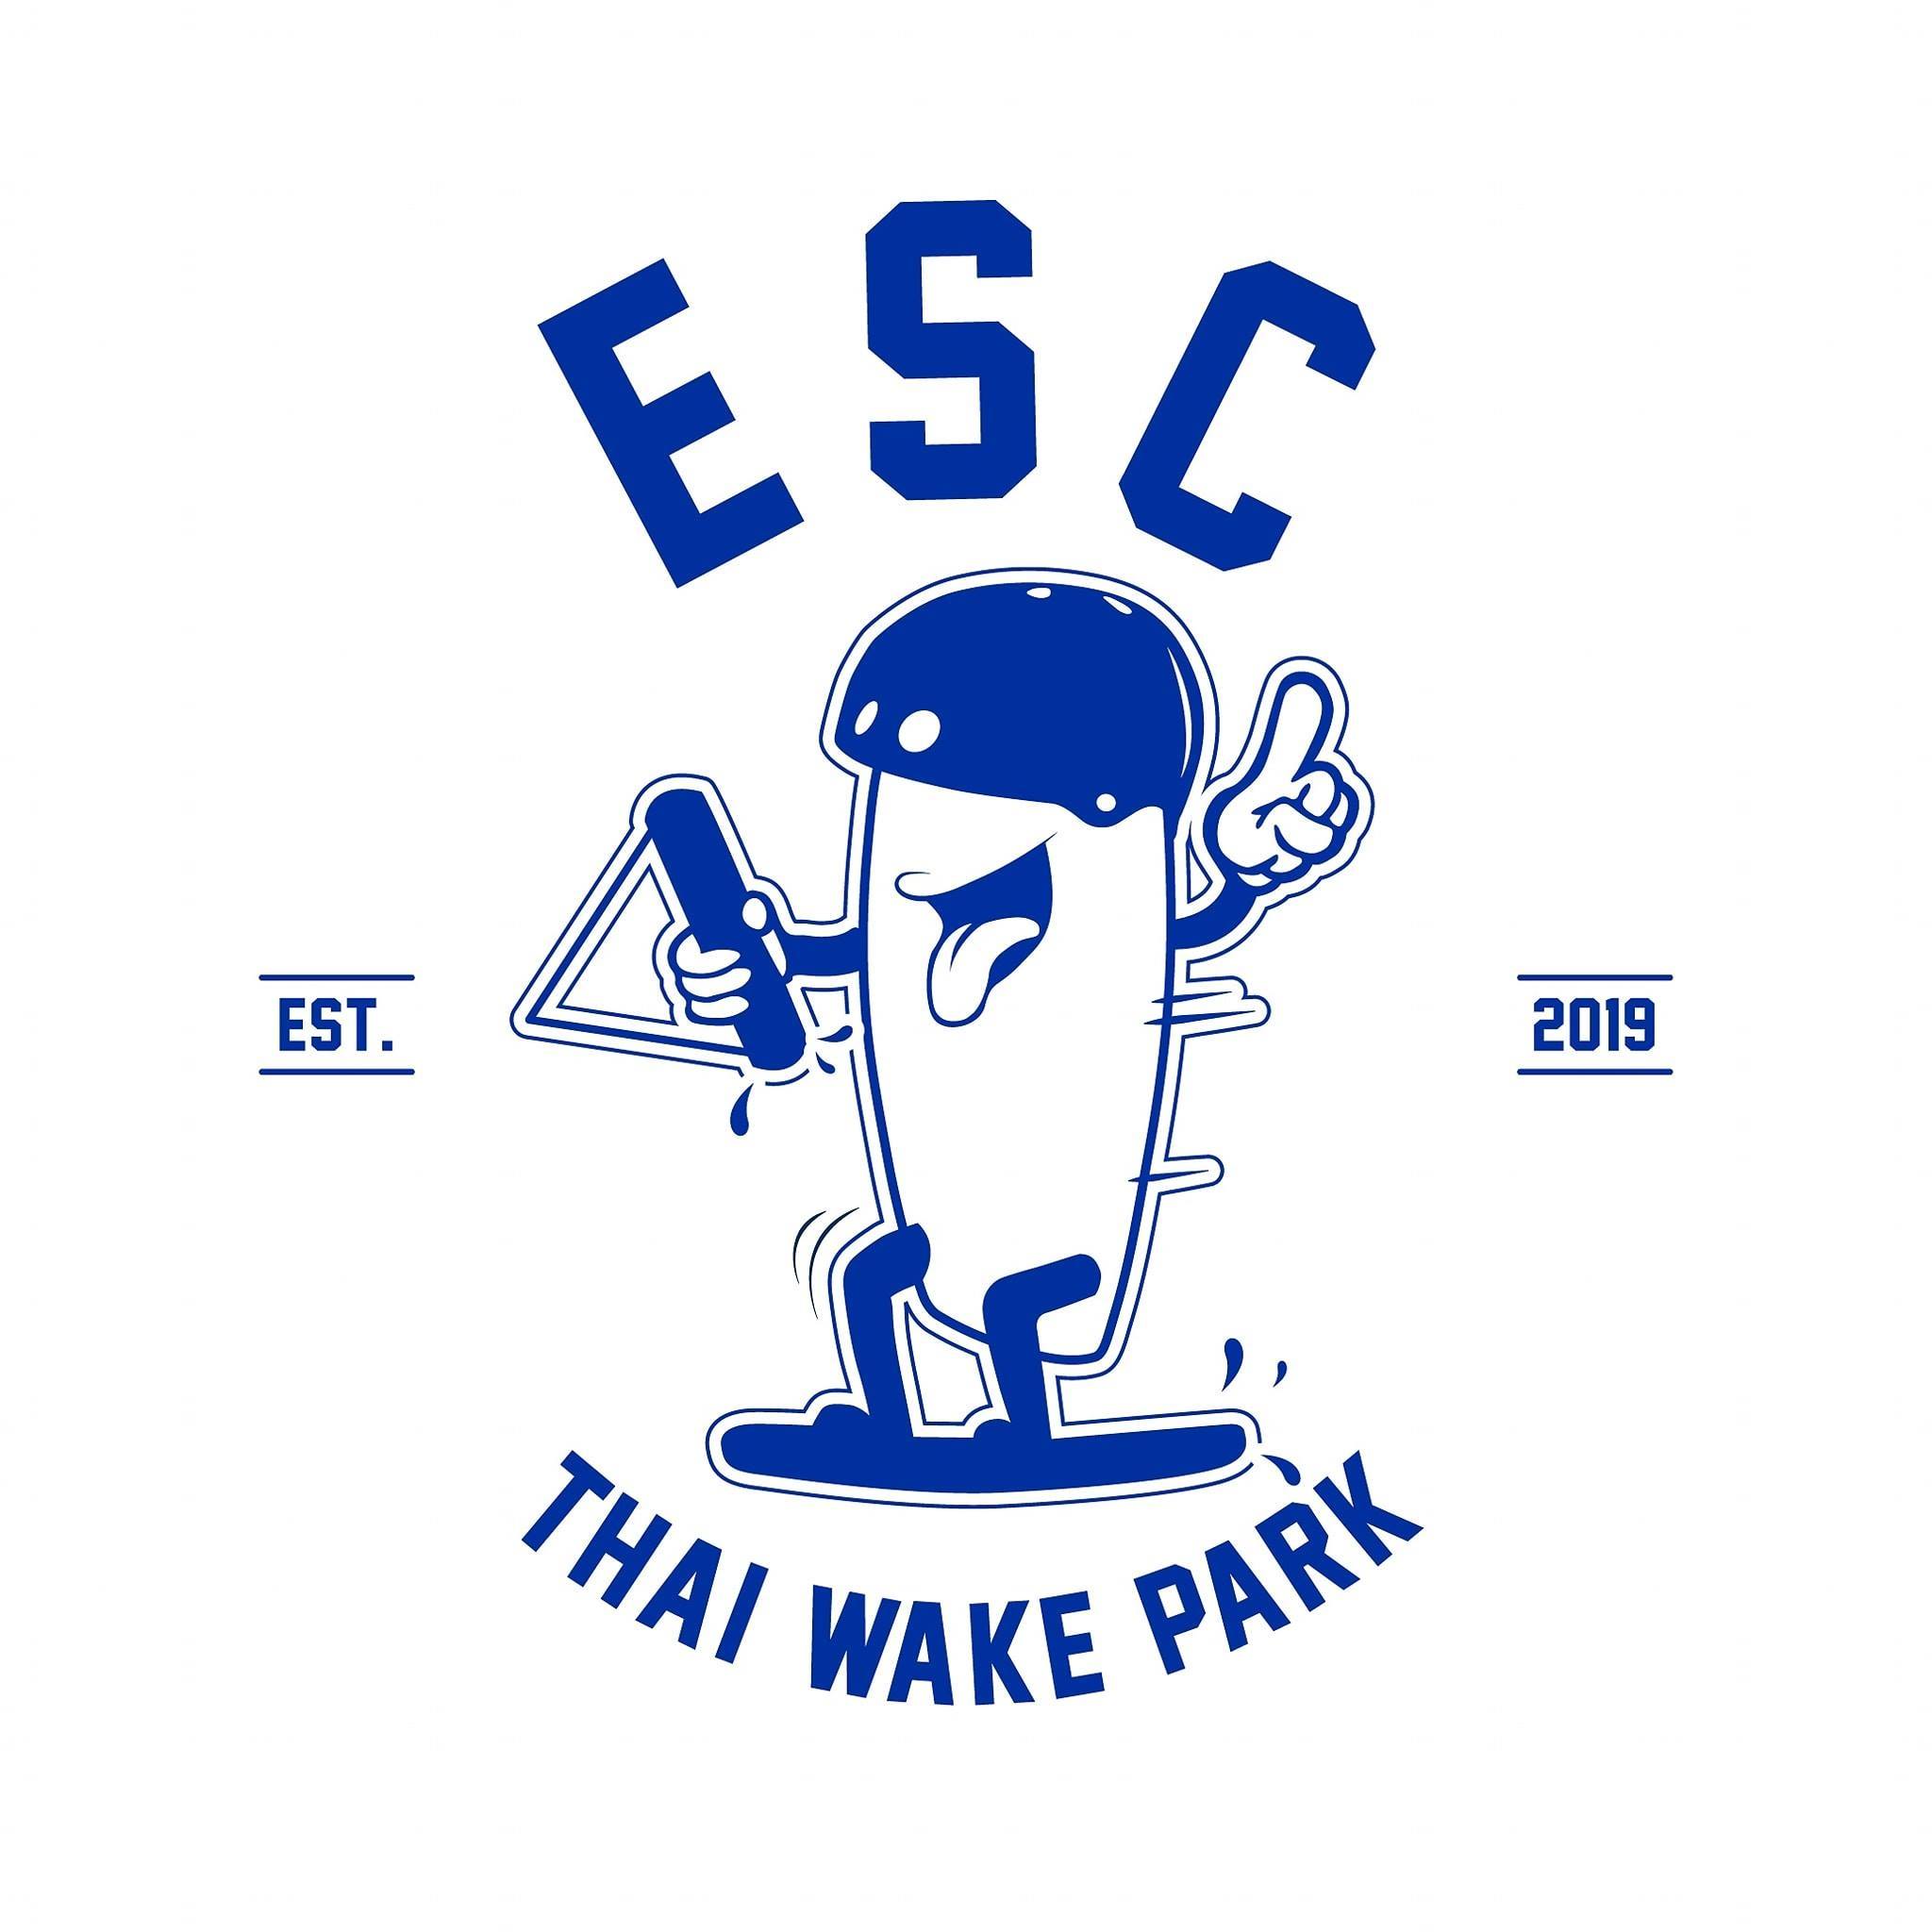 ESC Thai Wake Park image